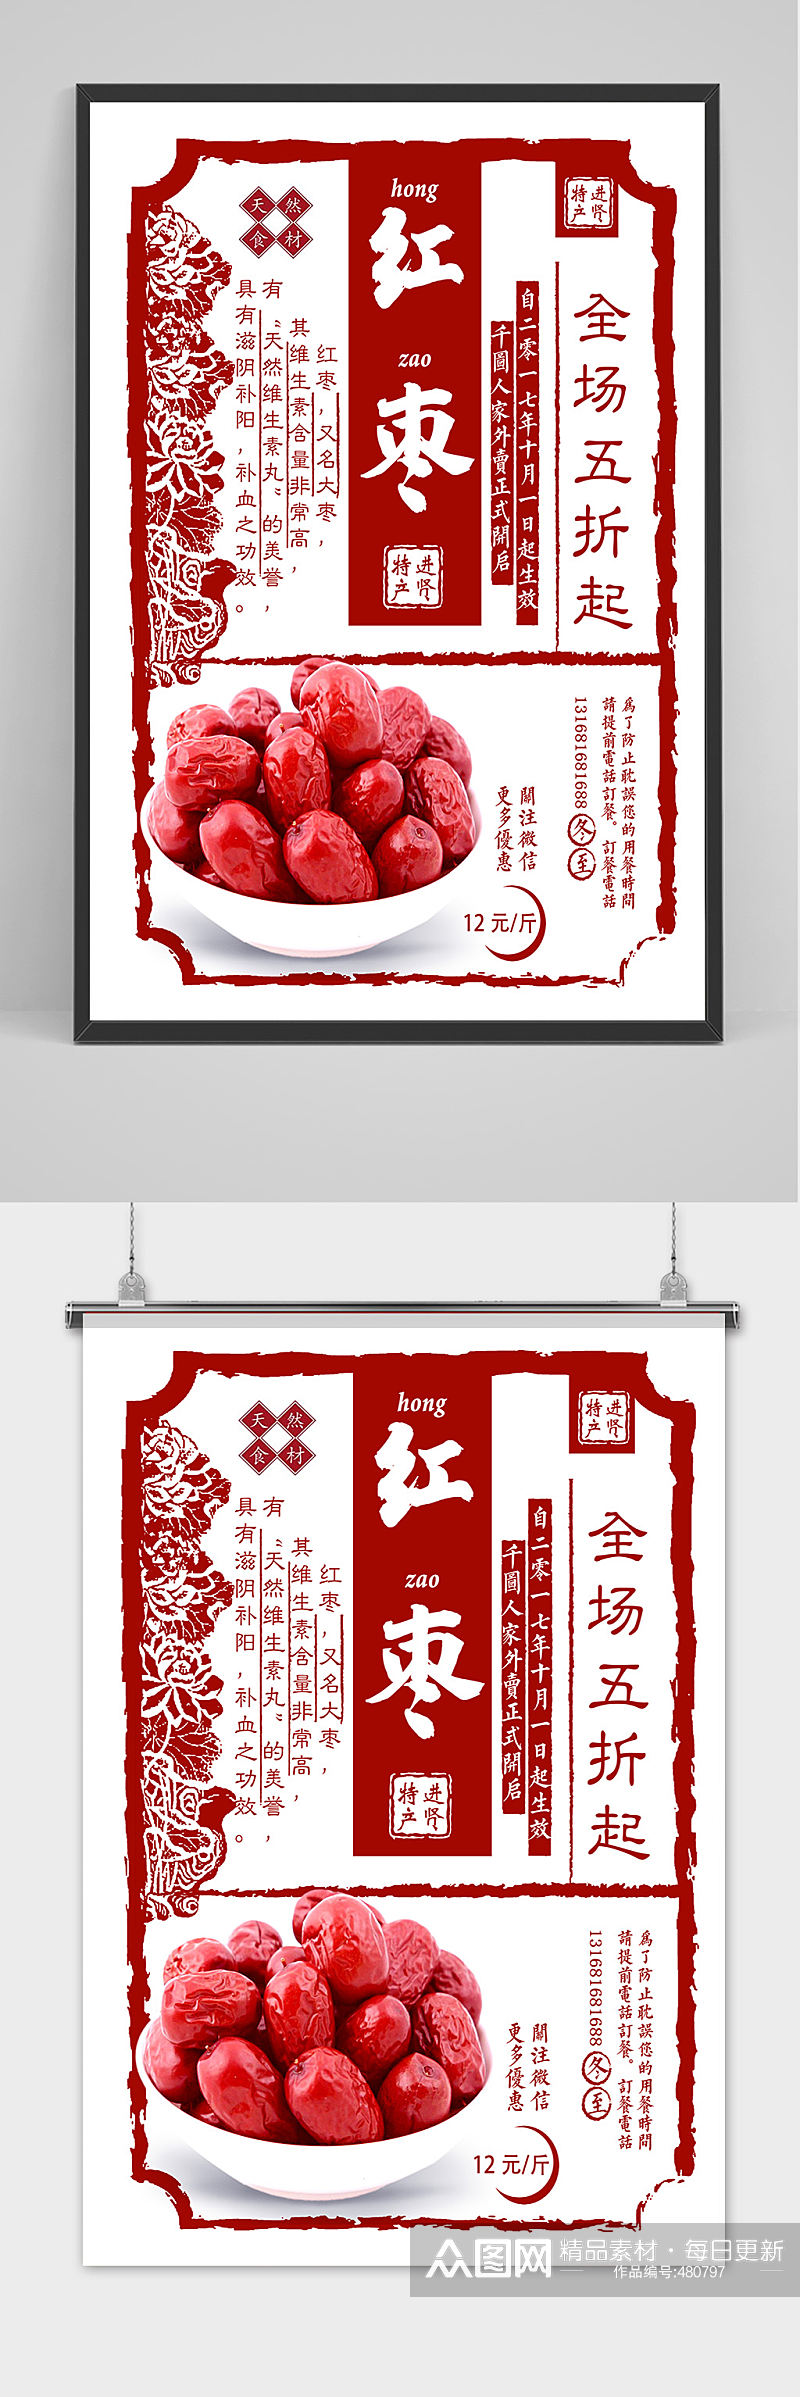 简约红枣美食促销设计海报素材